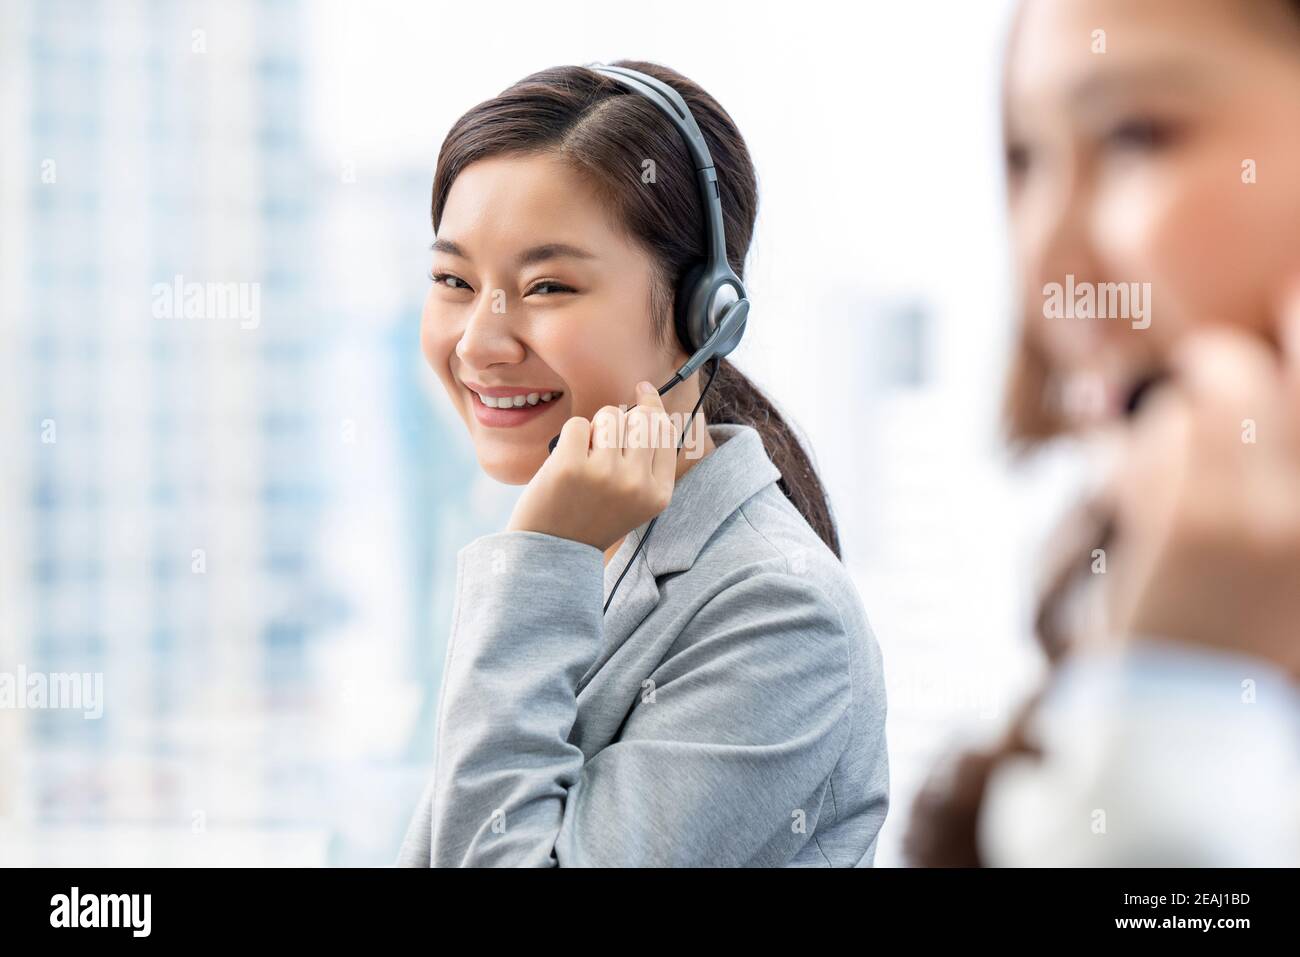 Lächelnde, schöne Asianerin, die als Kundendienst-Bedienerin im Callcenter-Büro arbeitet Stockfoto